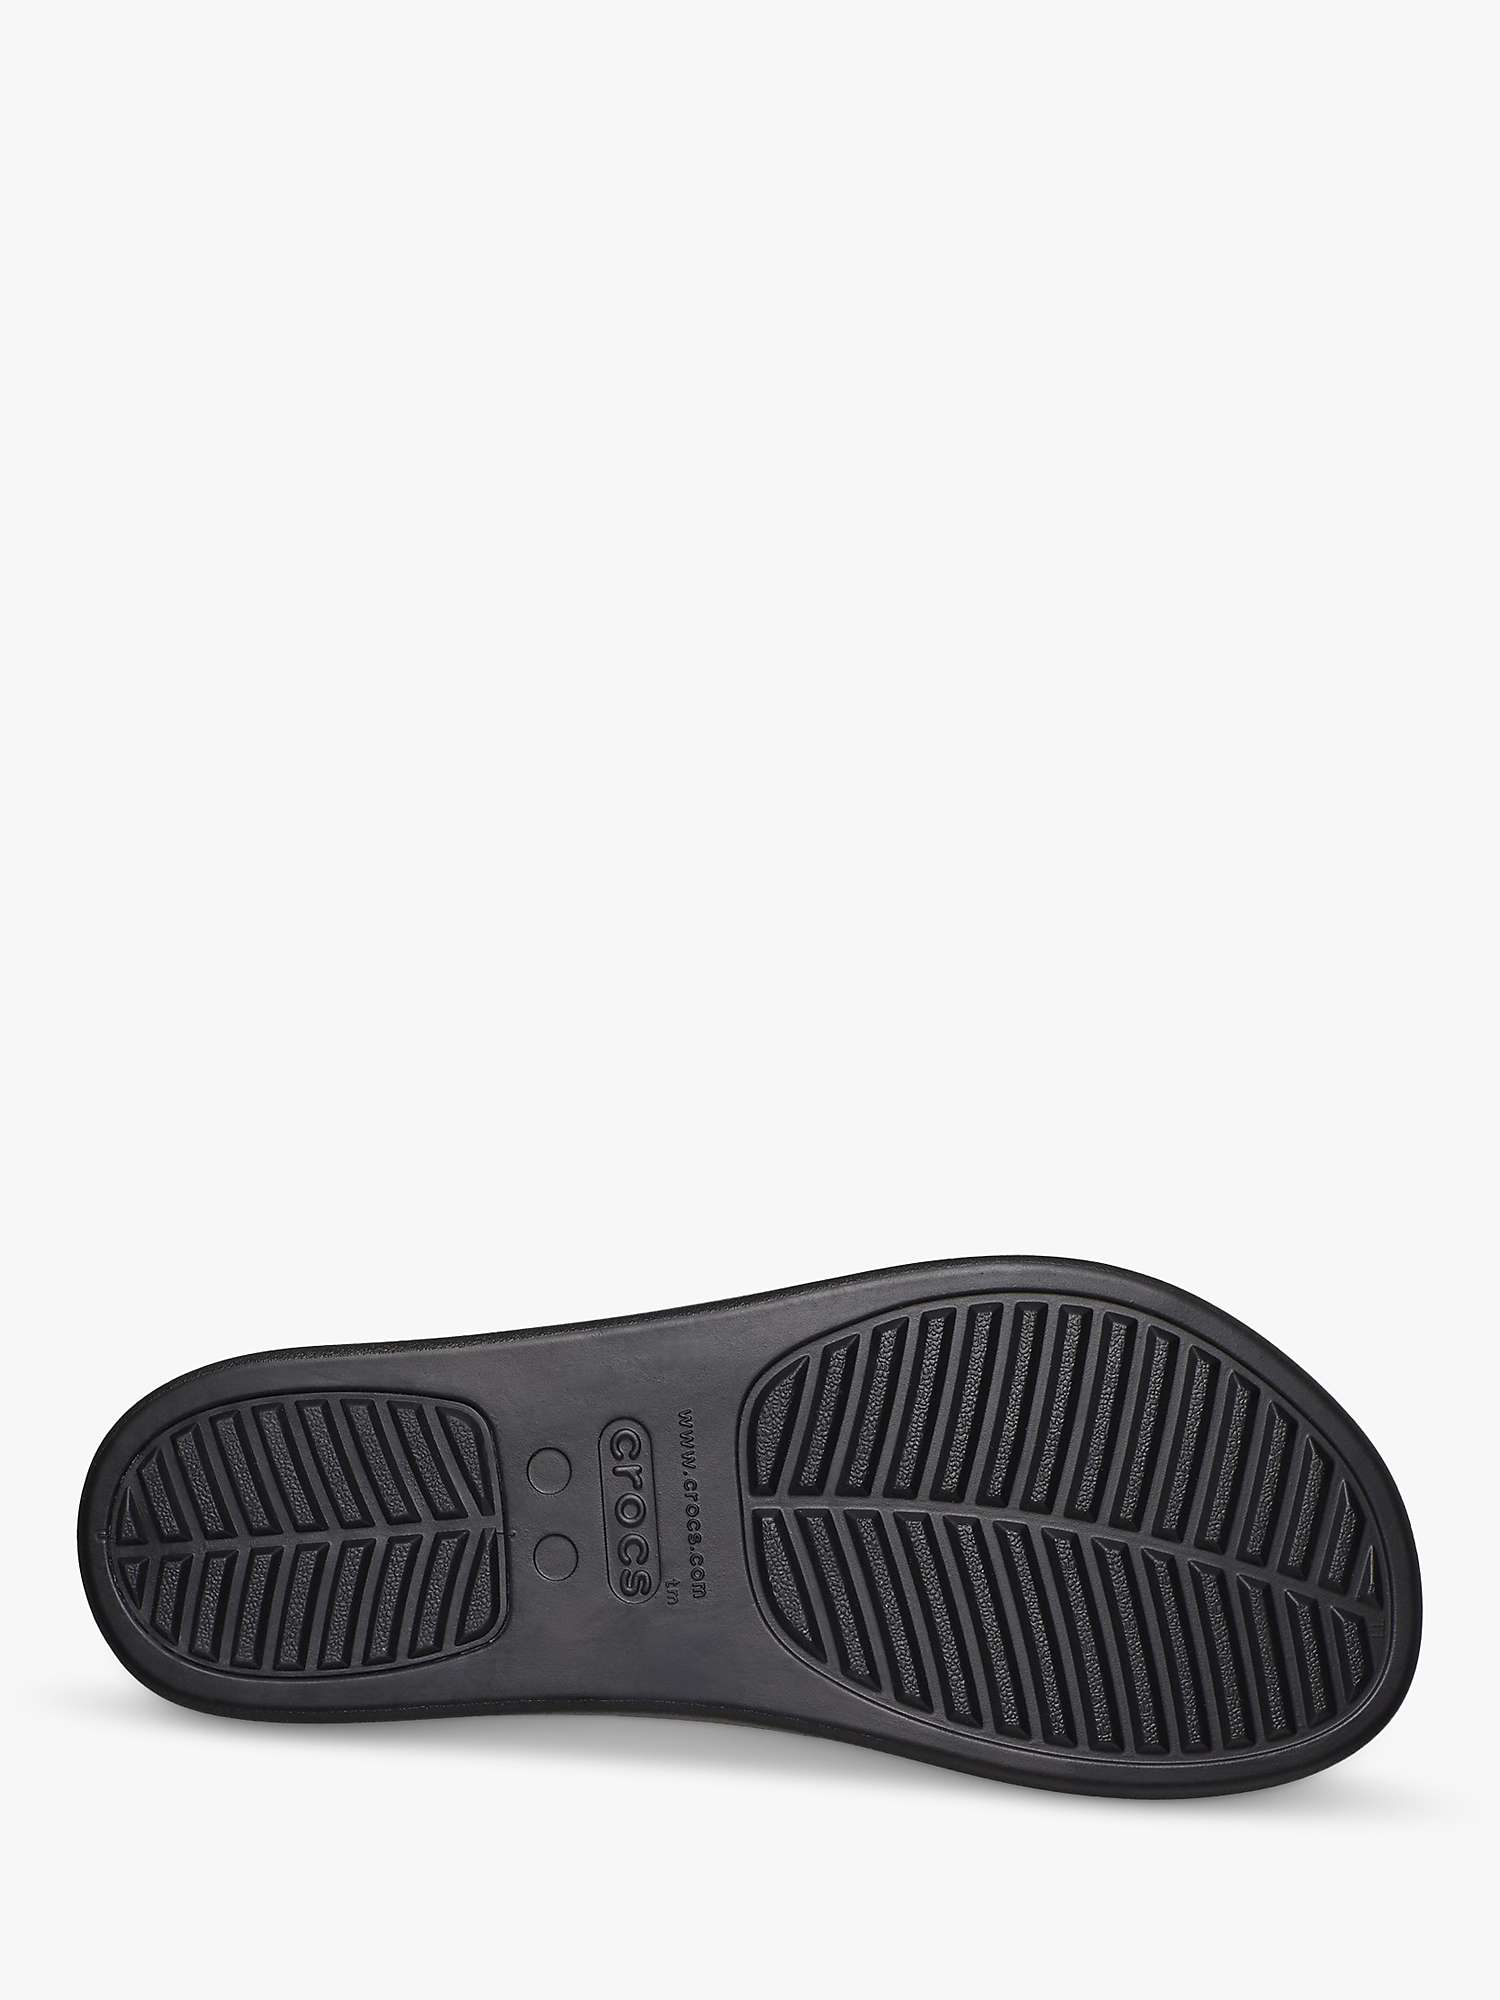 Buy Crocs Brooklyn Flip-Flops, Black Online at johnlewis.com